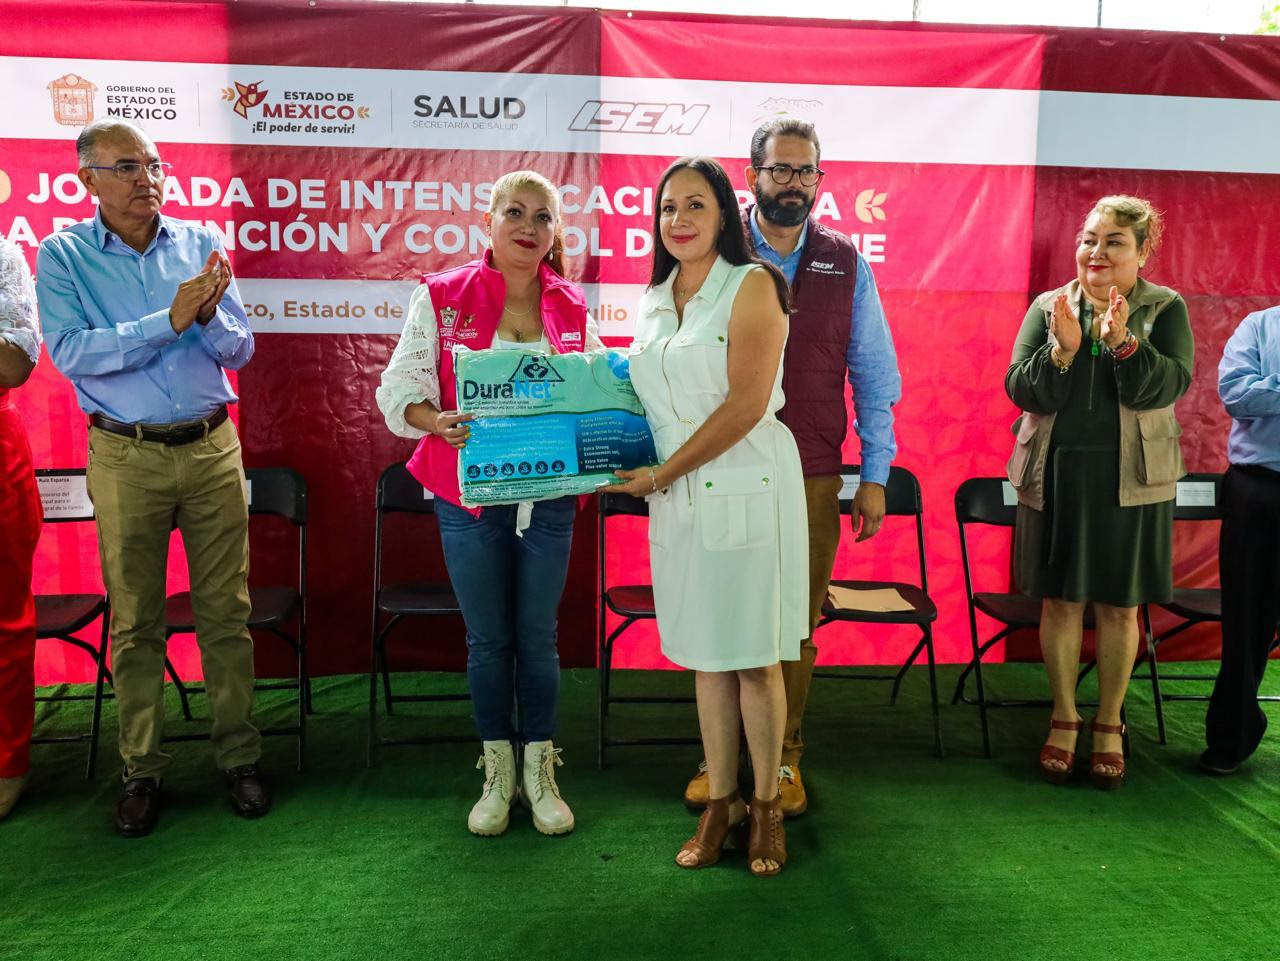 Refuerza Secretaría de Salud campaña de prevención y control el dengue en la región sur del Estado de México